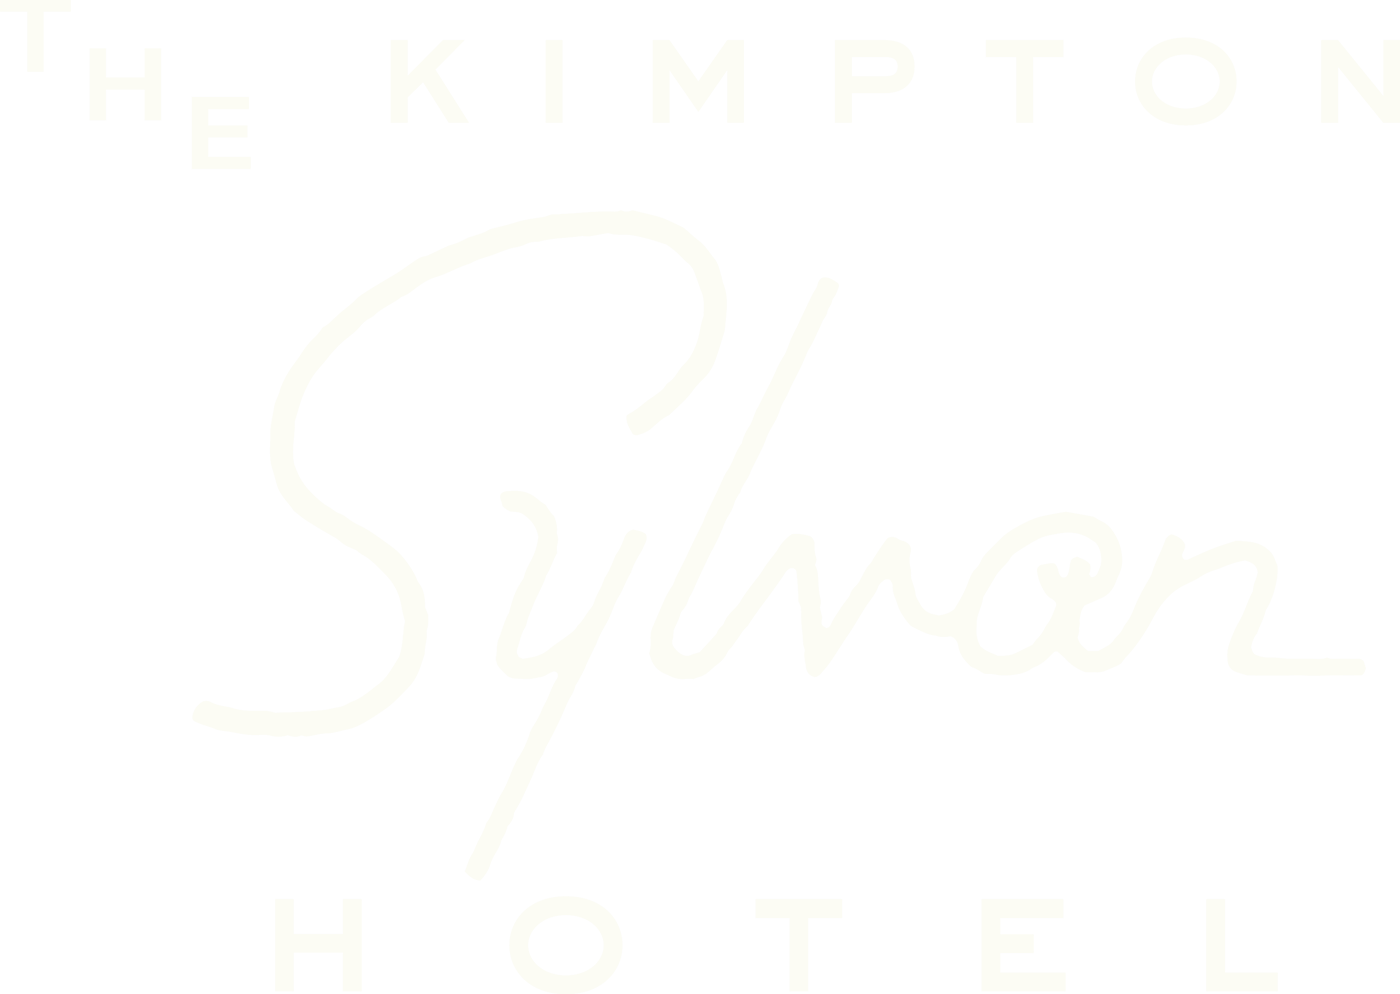 Kimpton Sylvan Hotel logo in white